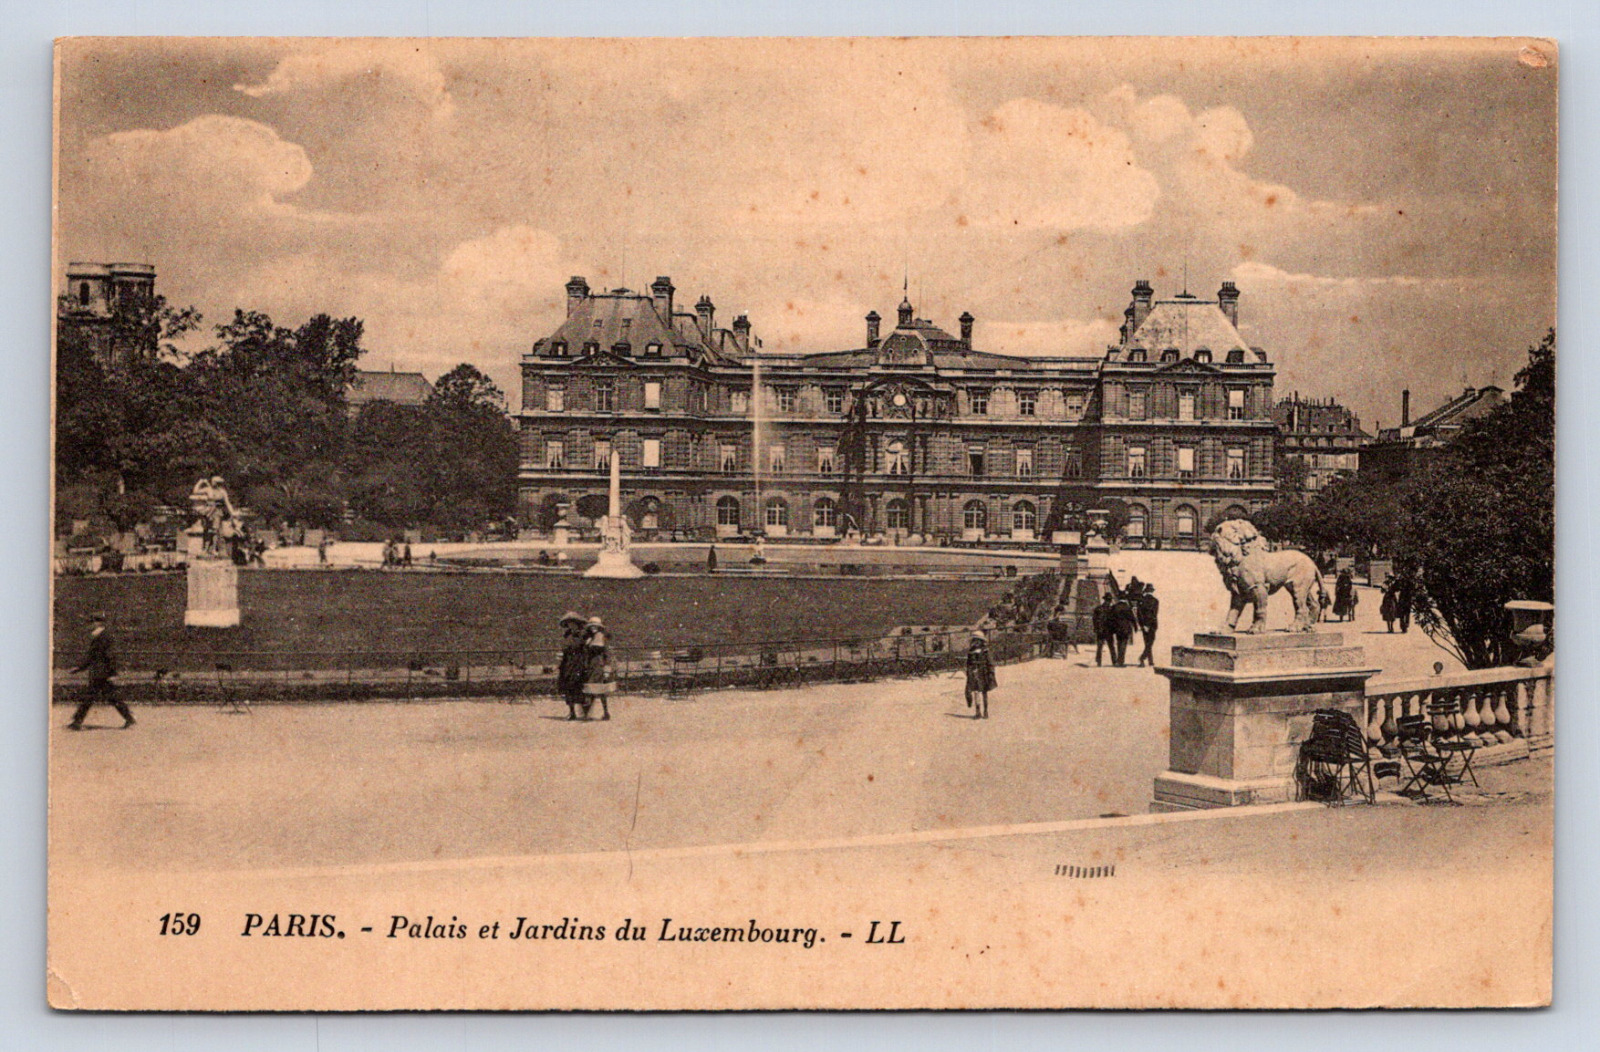 Vintage Postcard Paris Palais et Jardins du Luxembourg